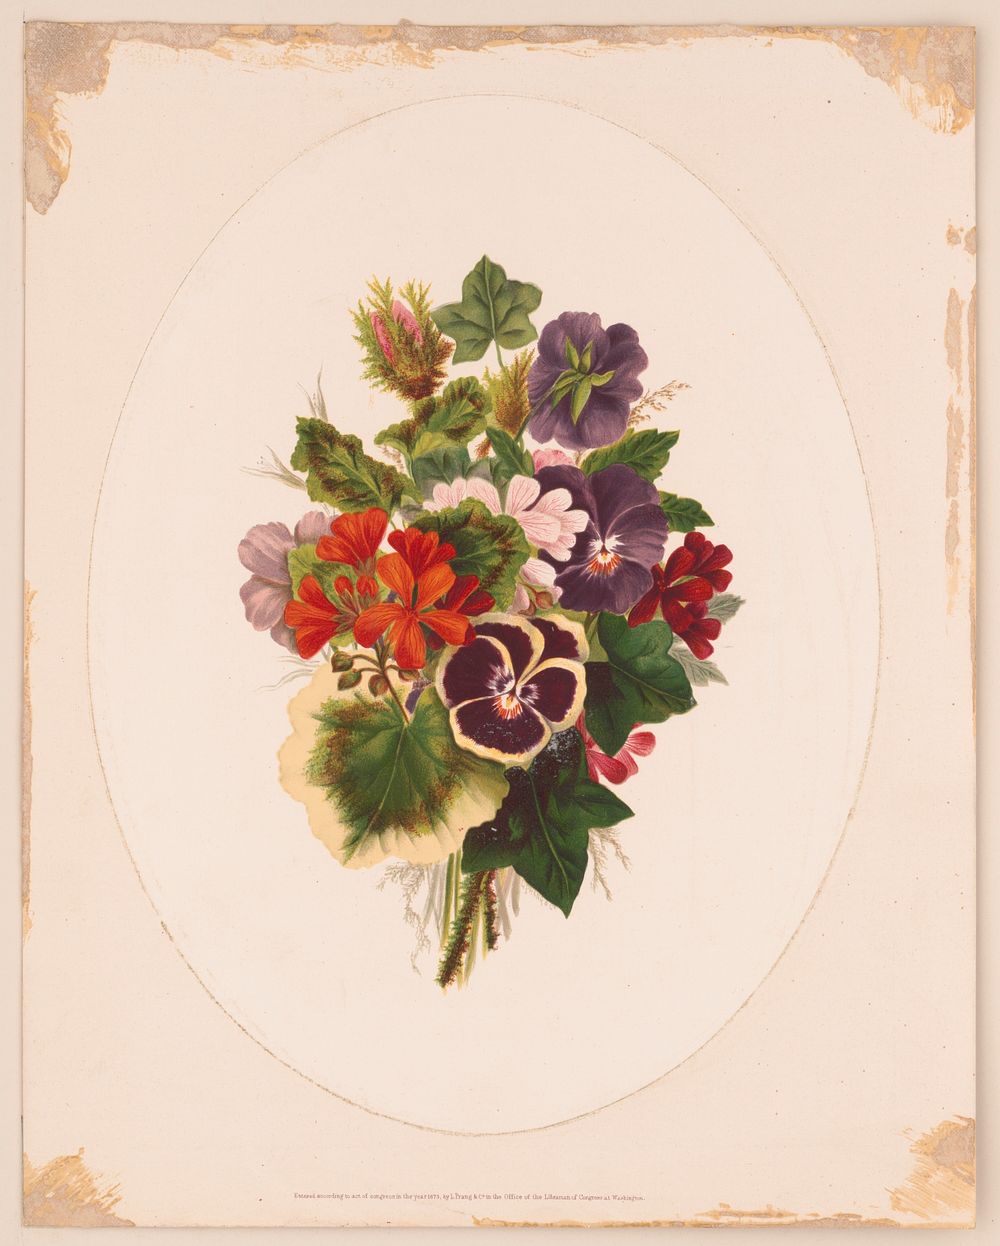 [Bouquet of flowers], L. Prang & Co., publisher